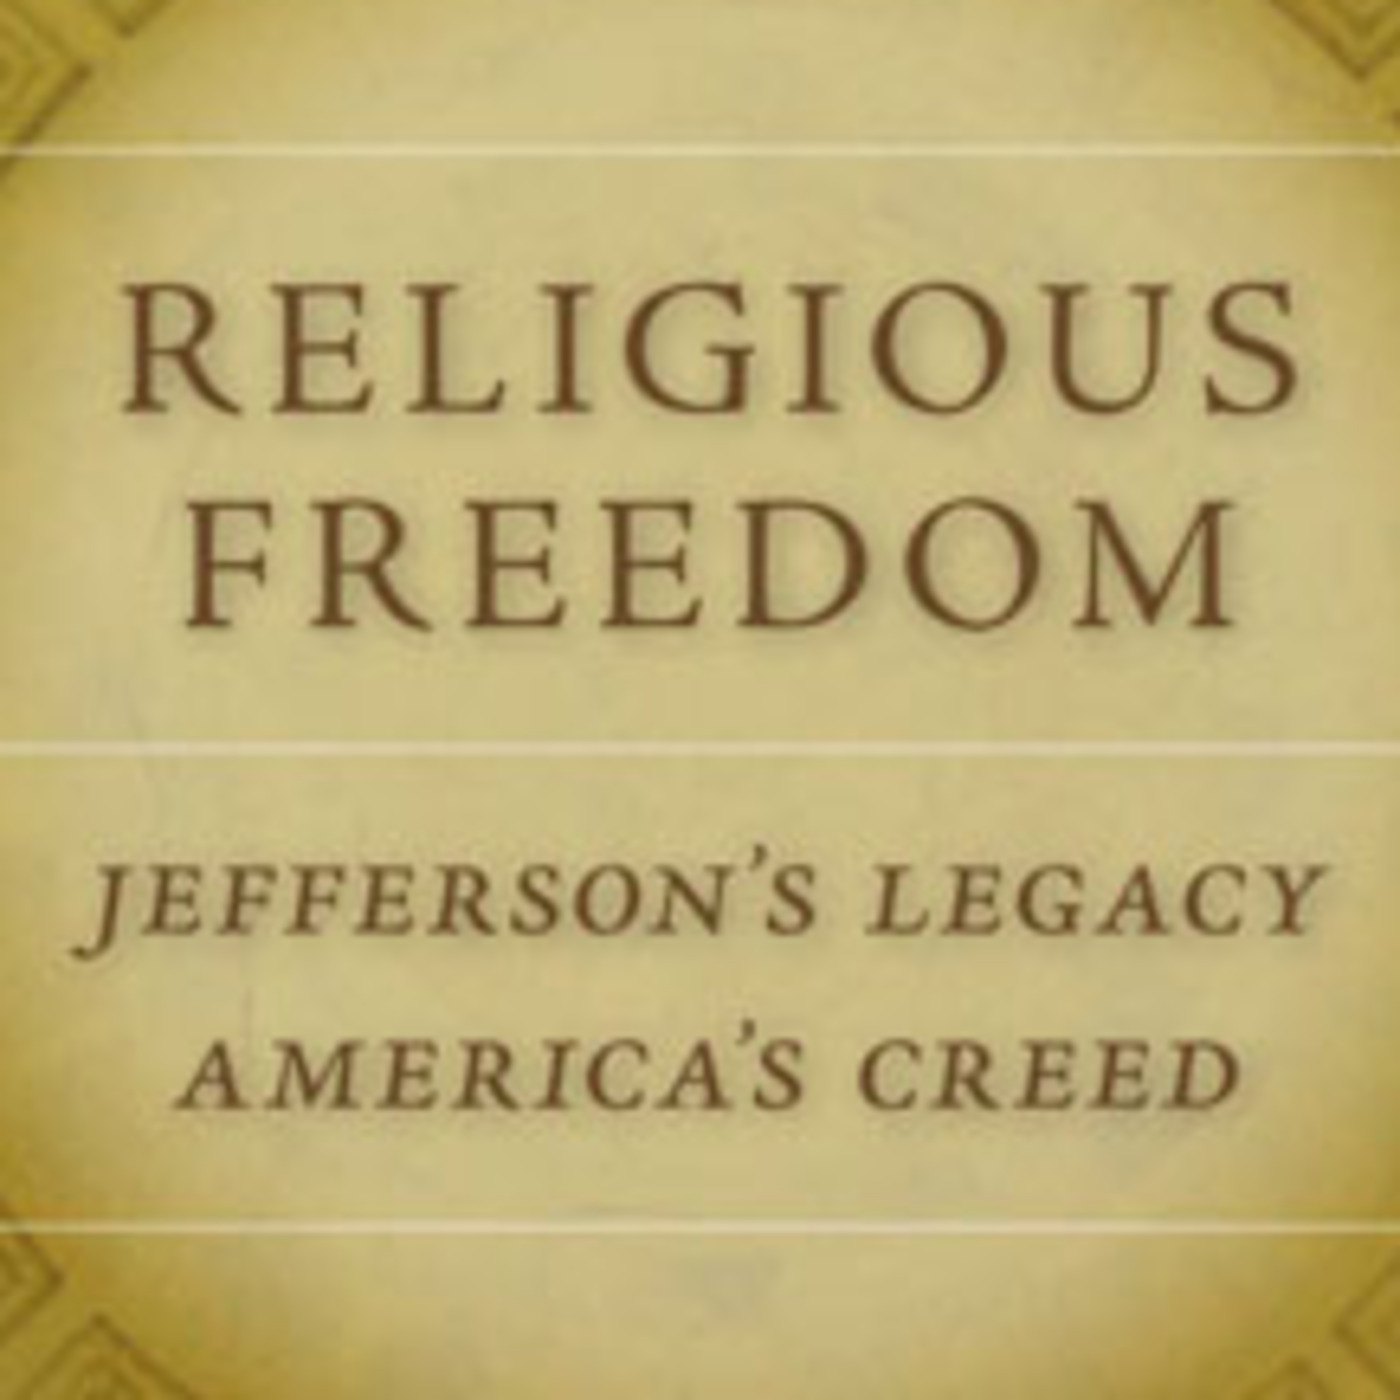 Thomas Jefferson's Vision of Religious Freedom